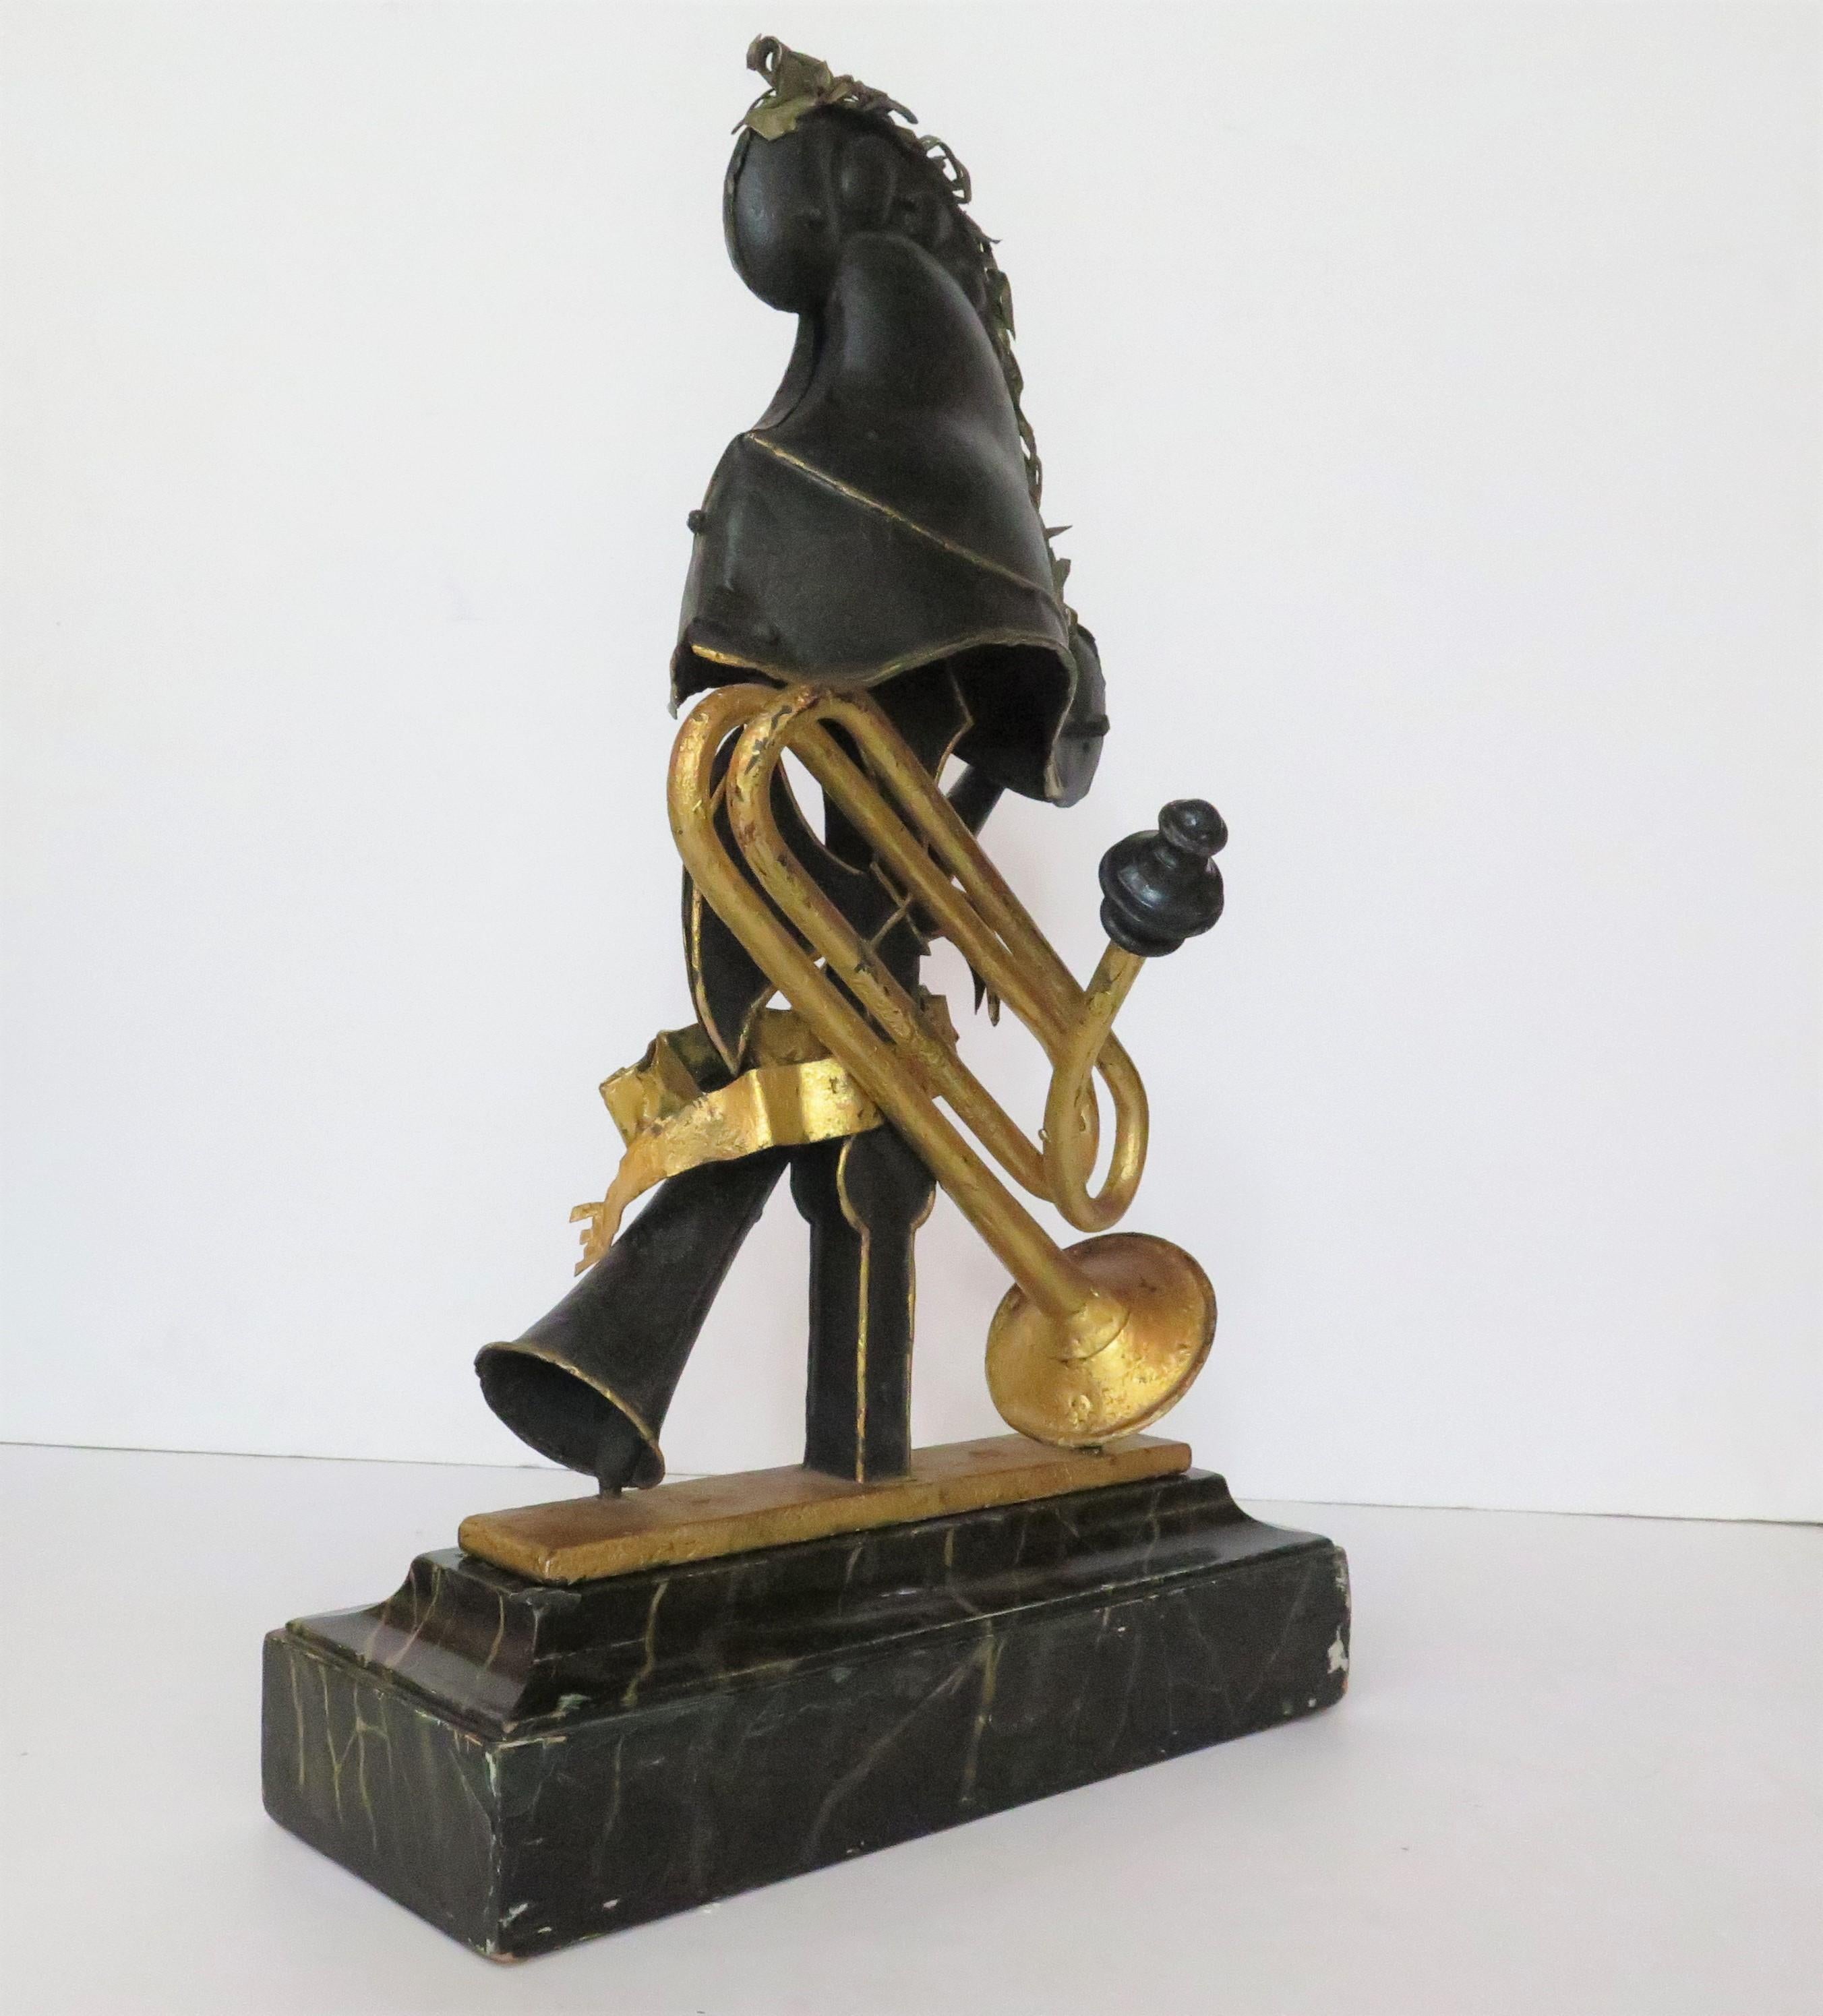 französische Skulptur, bemaltes und paketvergoldetes Metall, ein phrygischer Helm (mit vergoldeten Details) mit vergoldetem Federschmuck, auf einer Hellebarde, mit gekreuztem Horn und einer goldenen Trompete, ein vergoldetes Band 